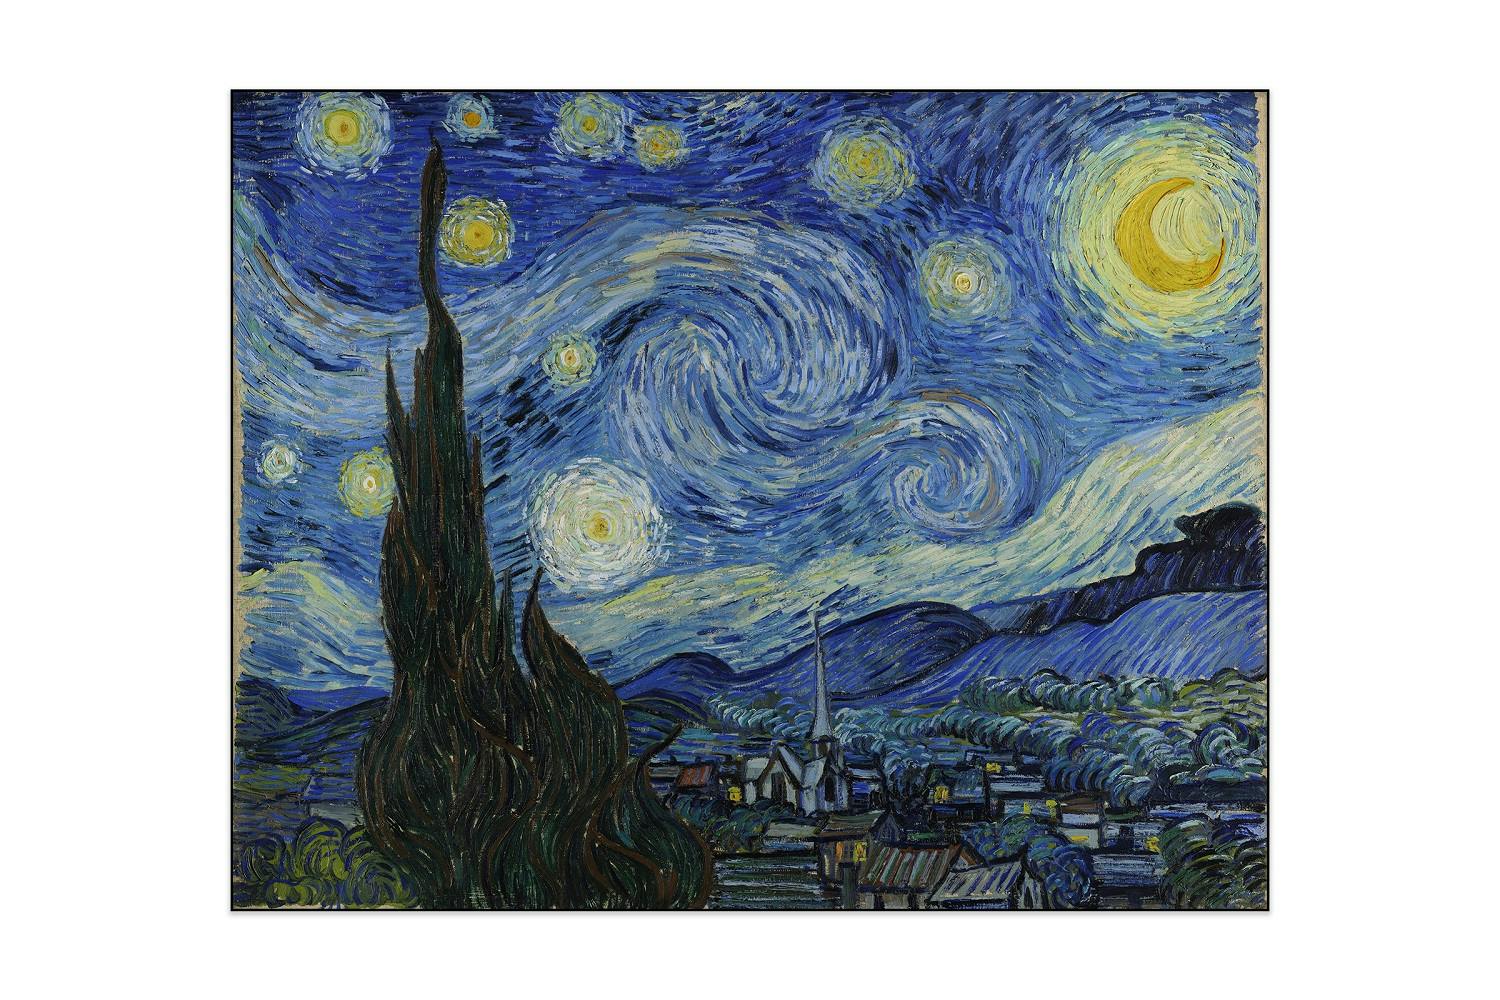 Akoestisch schilderij - Vincent van Gogh - De sterrennacht